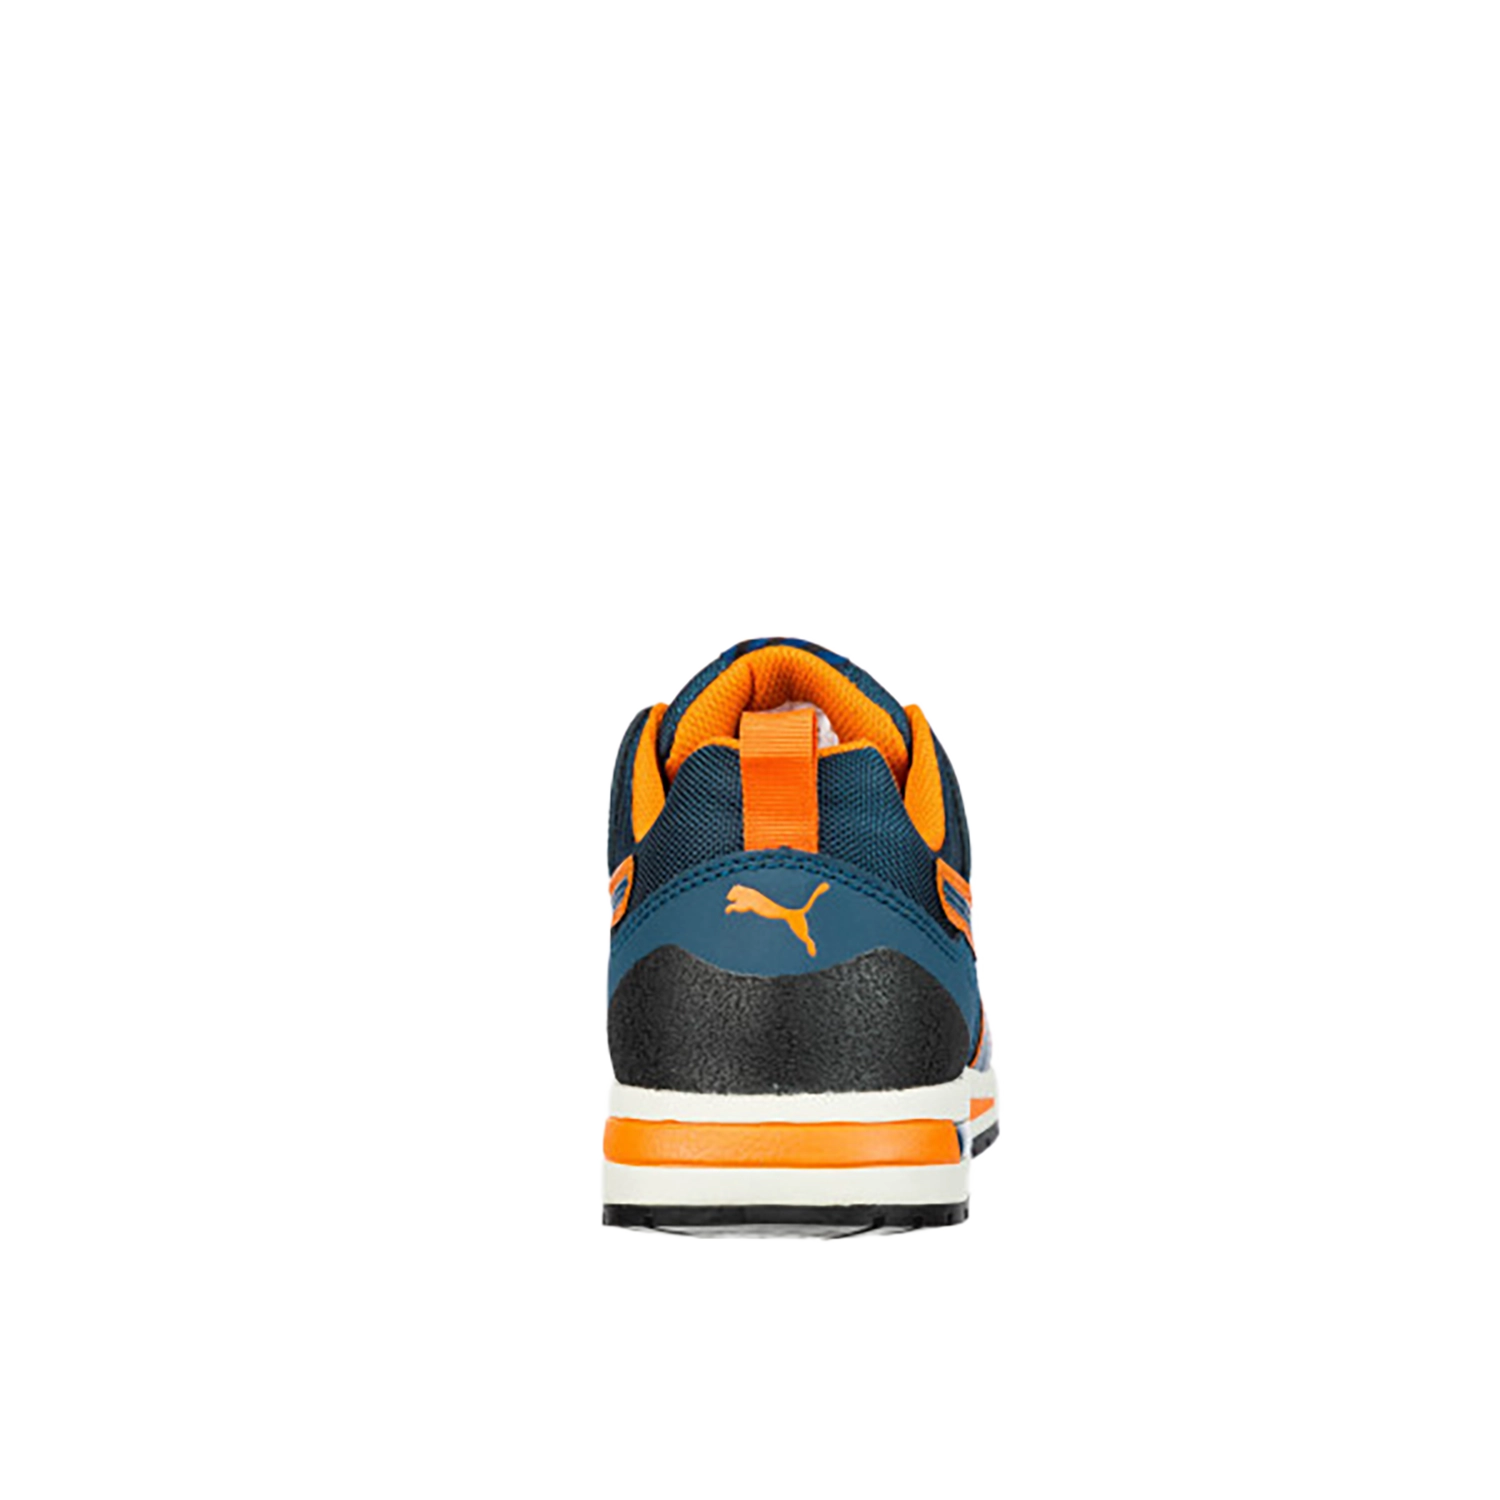 Chaussures de sécurité basse CrossTwist Low S3 HRO SRC - bleu/orange - taille 41